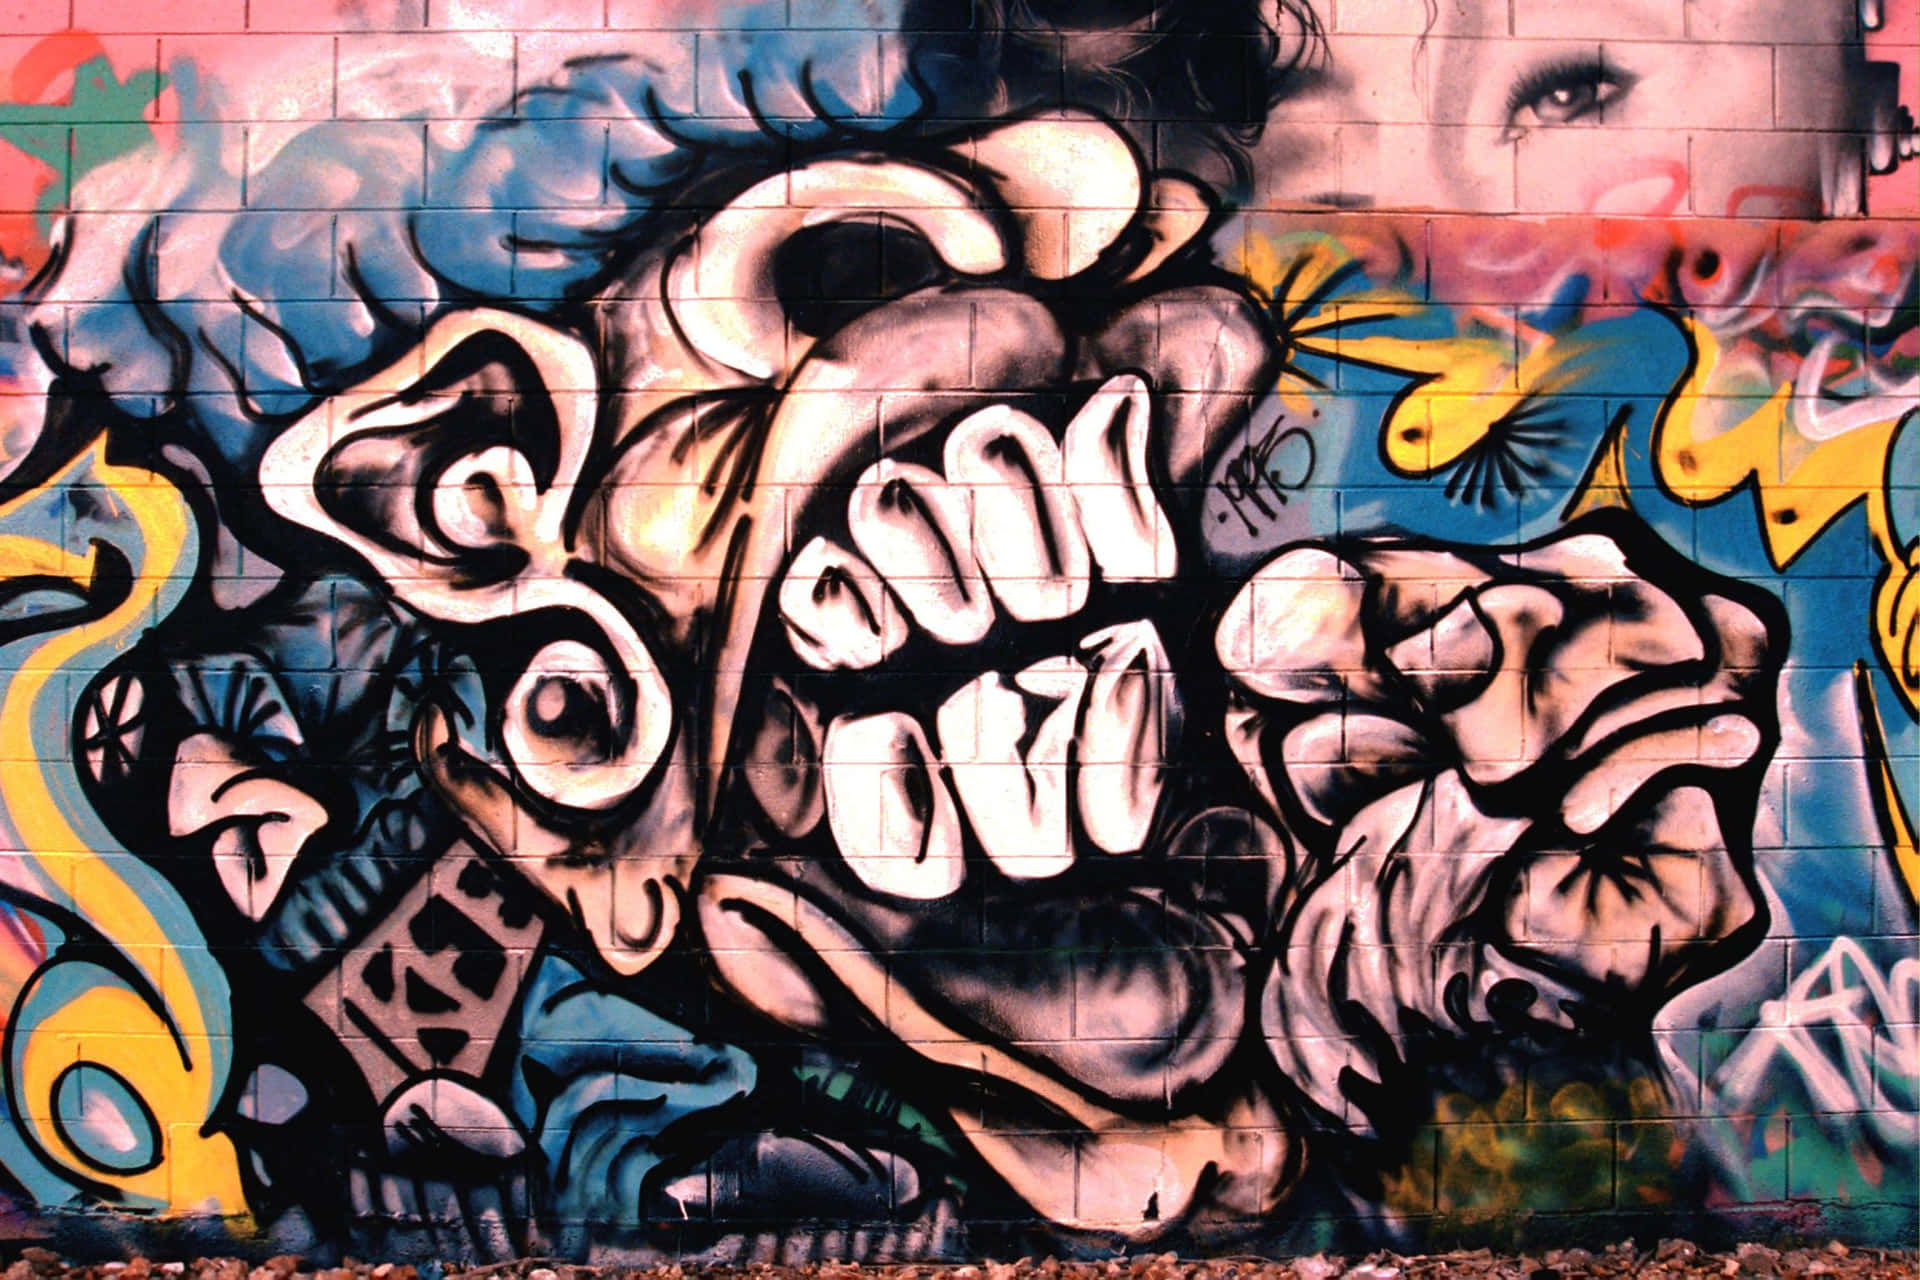 Graffiti Wall Art Featuring A Monster Head Wallpaper